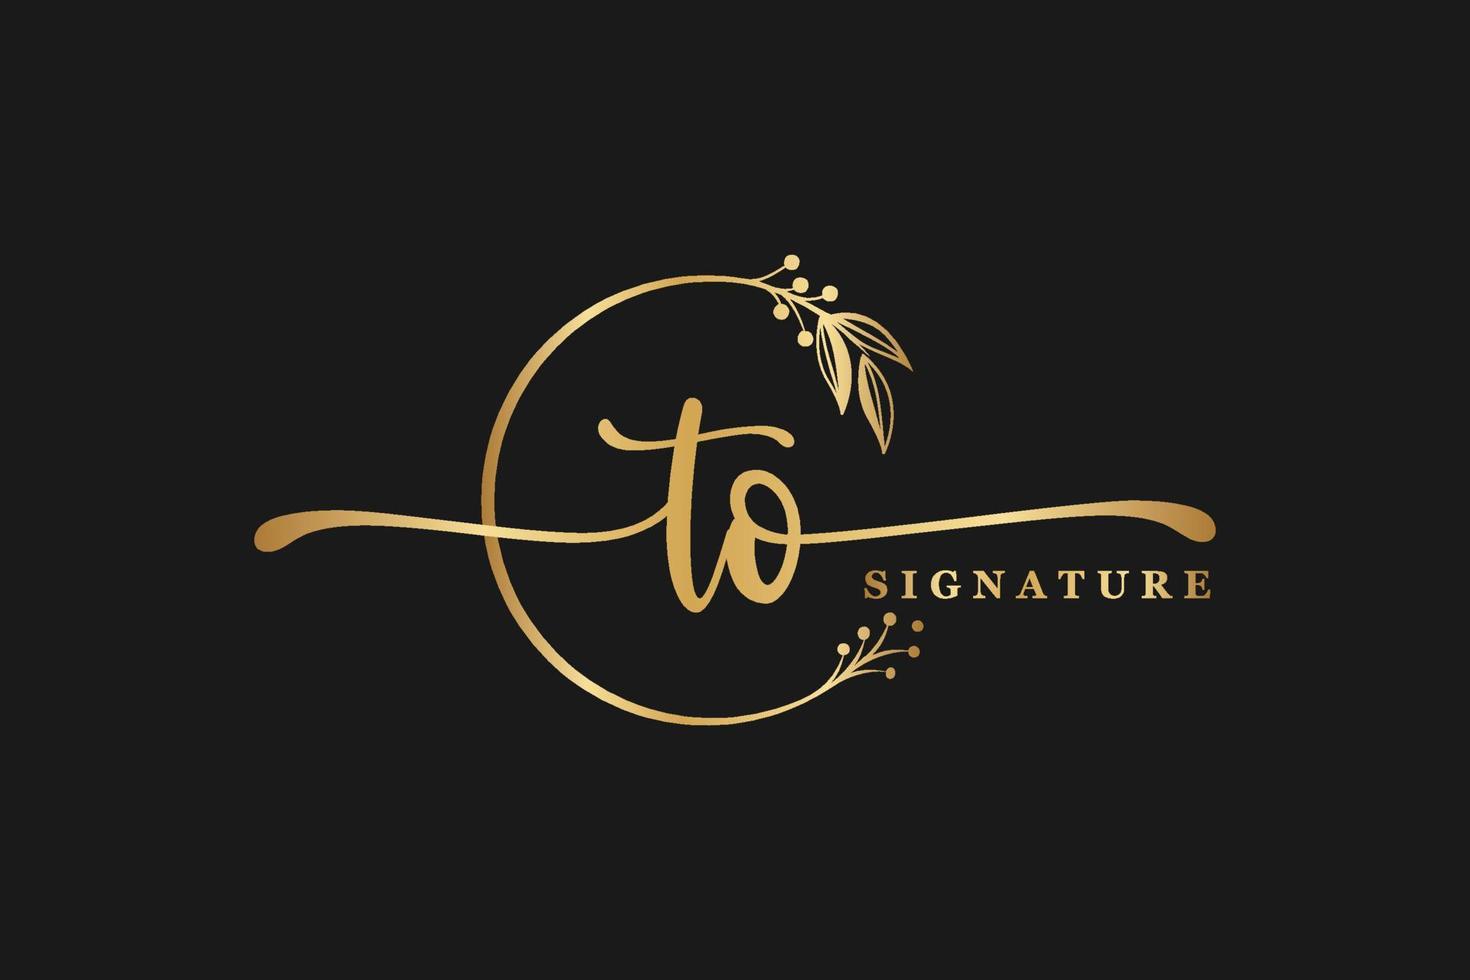 création de logo signature vecteur